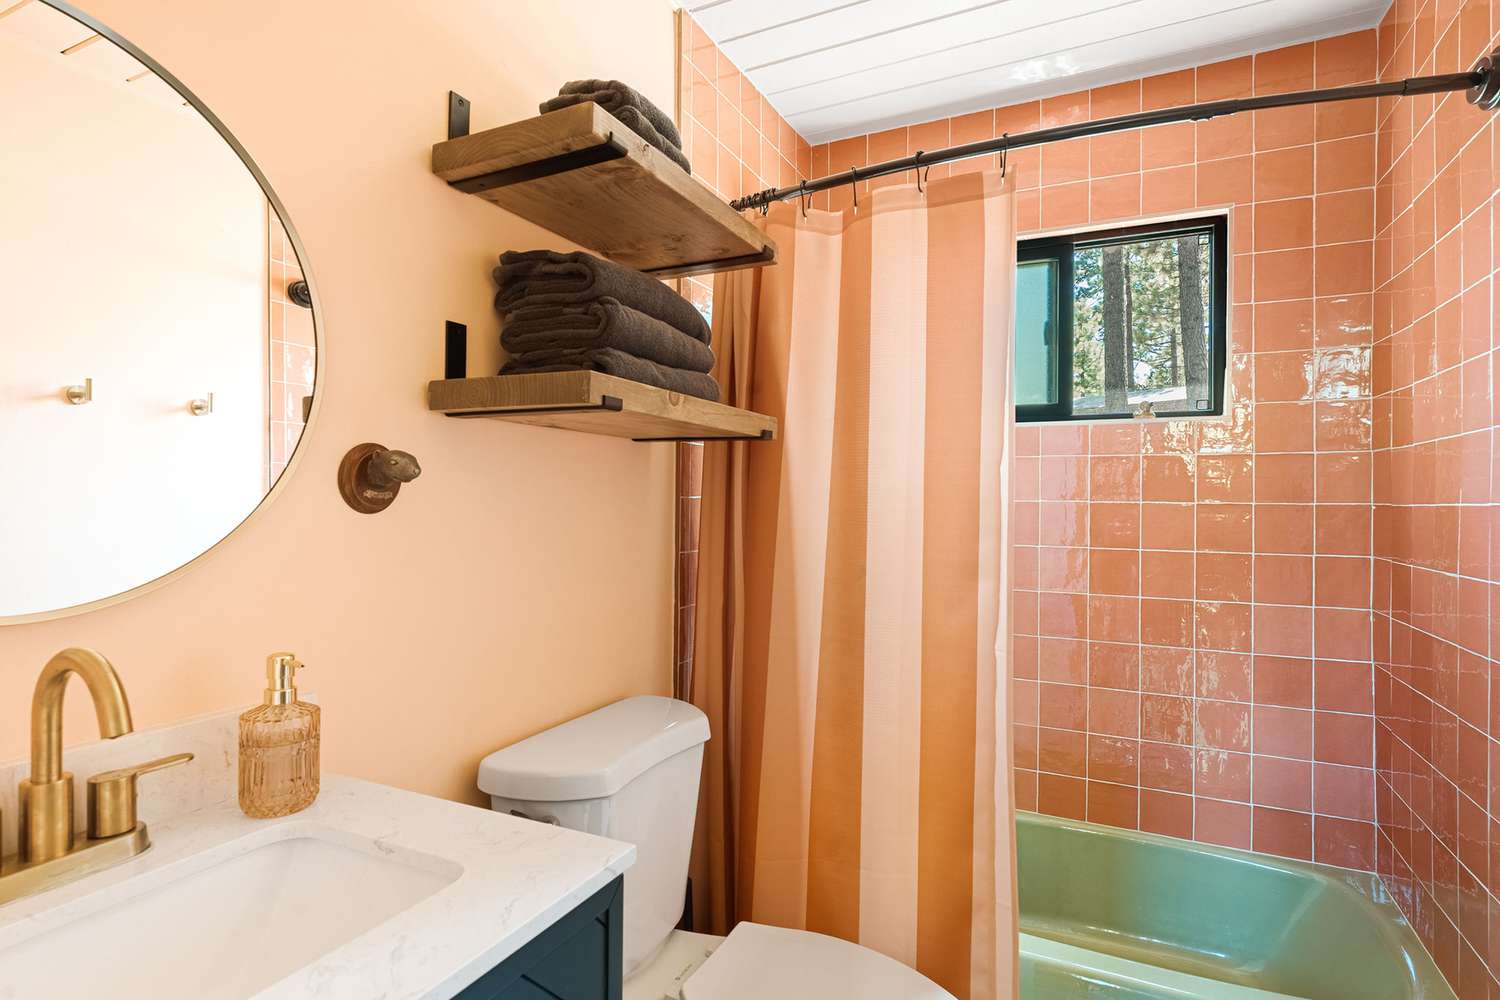 Rosa und grünes Badezimmer im Vintage-Stil